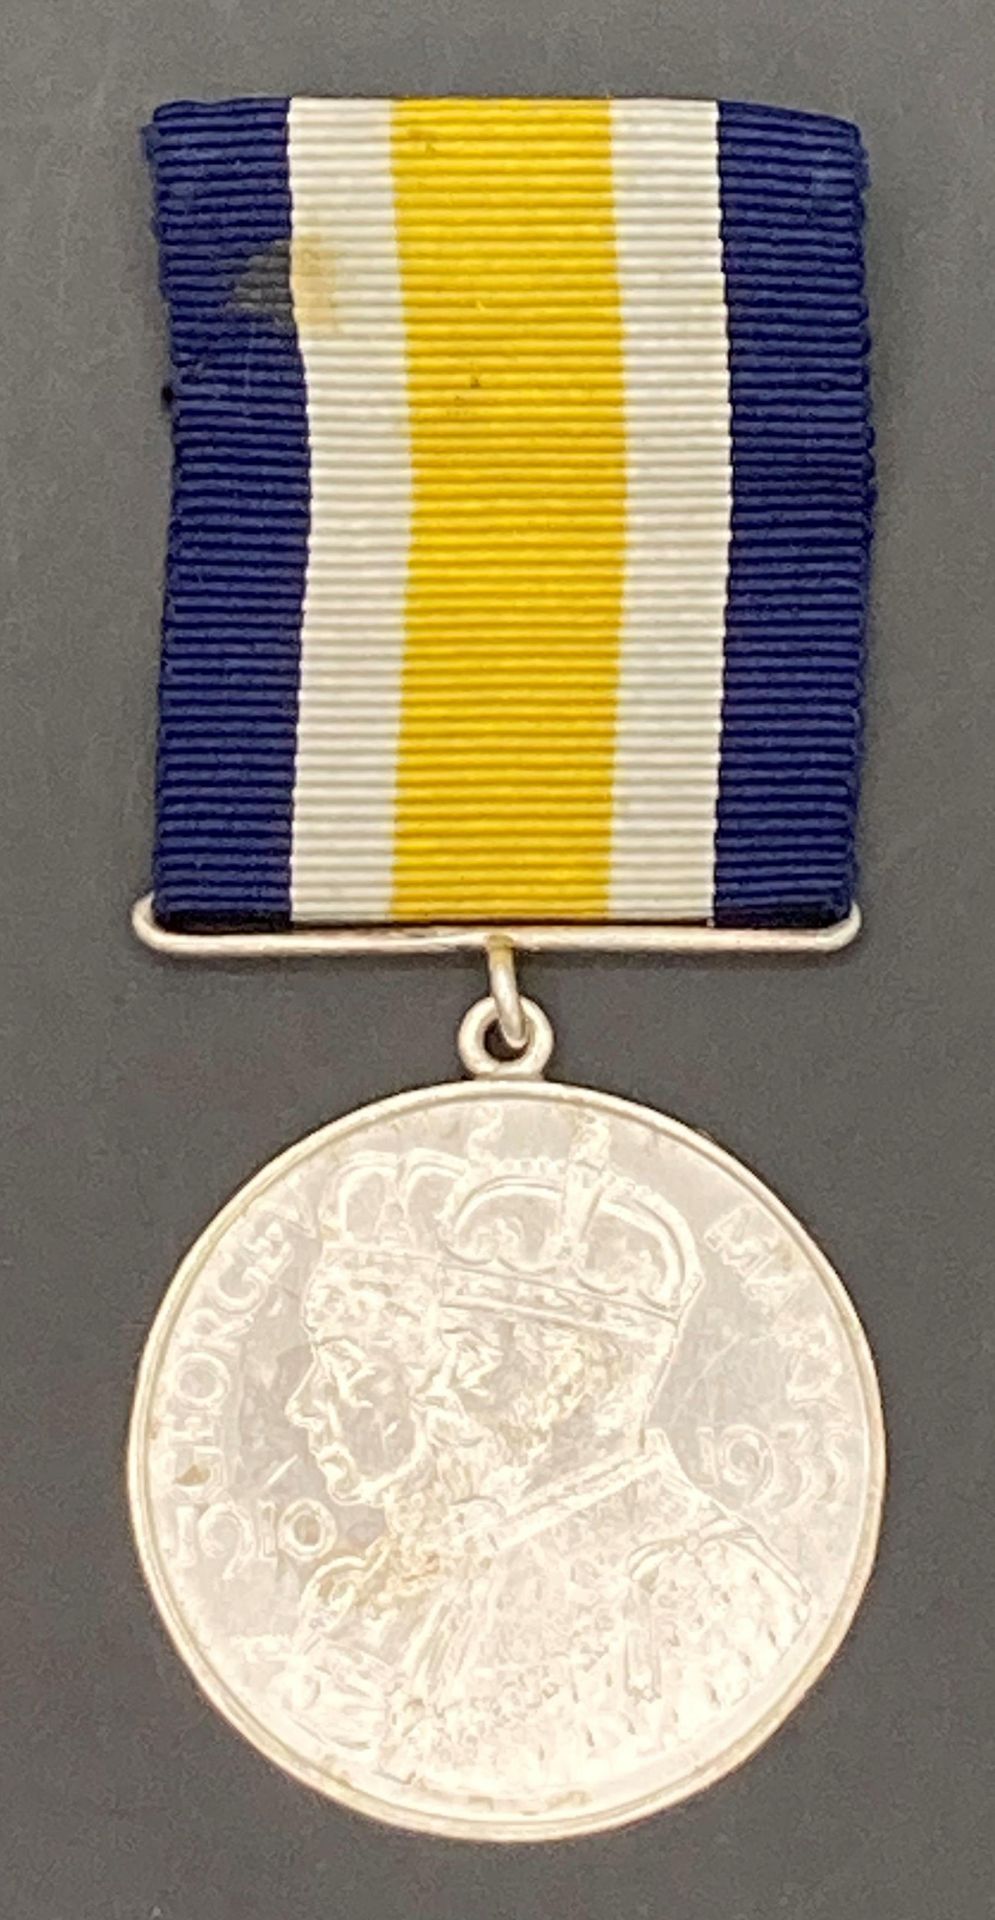 1935 Jubilee Medal.